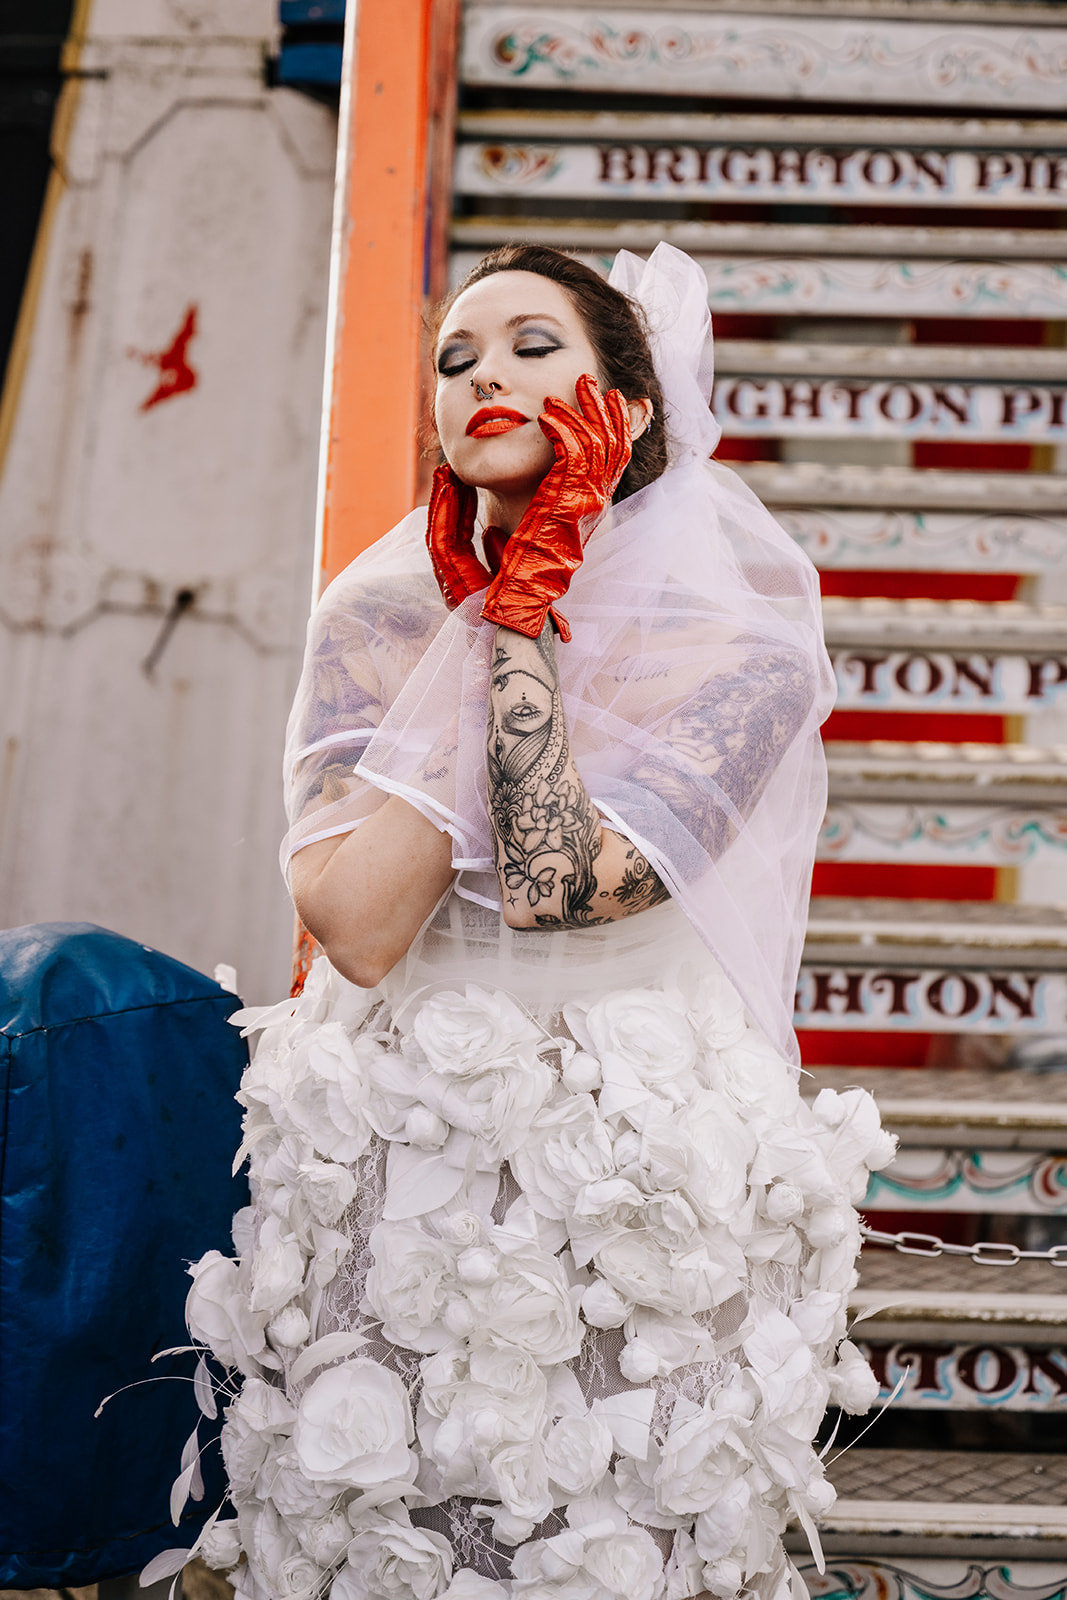 A tattoed bride in a wedding dress